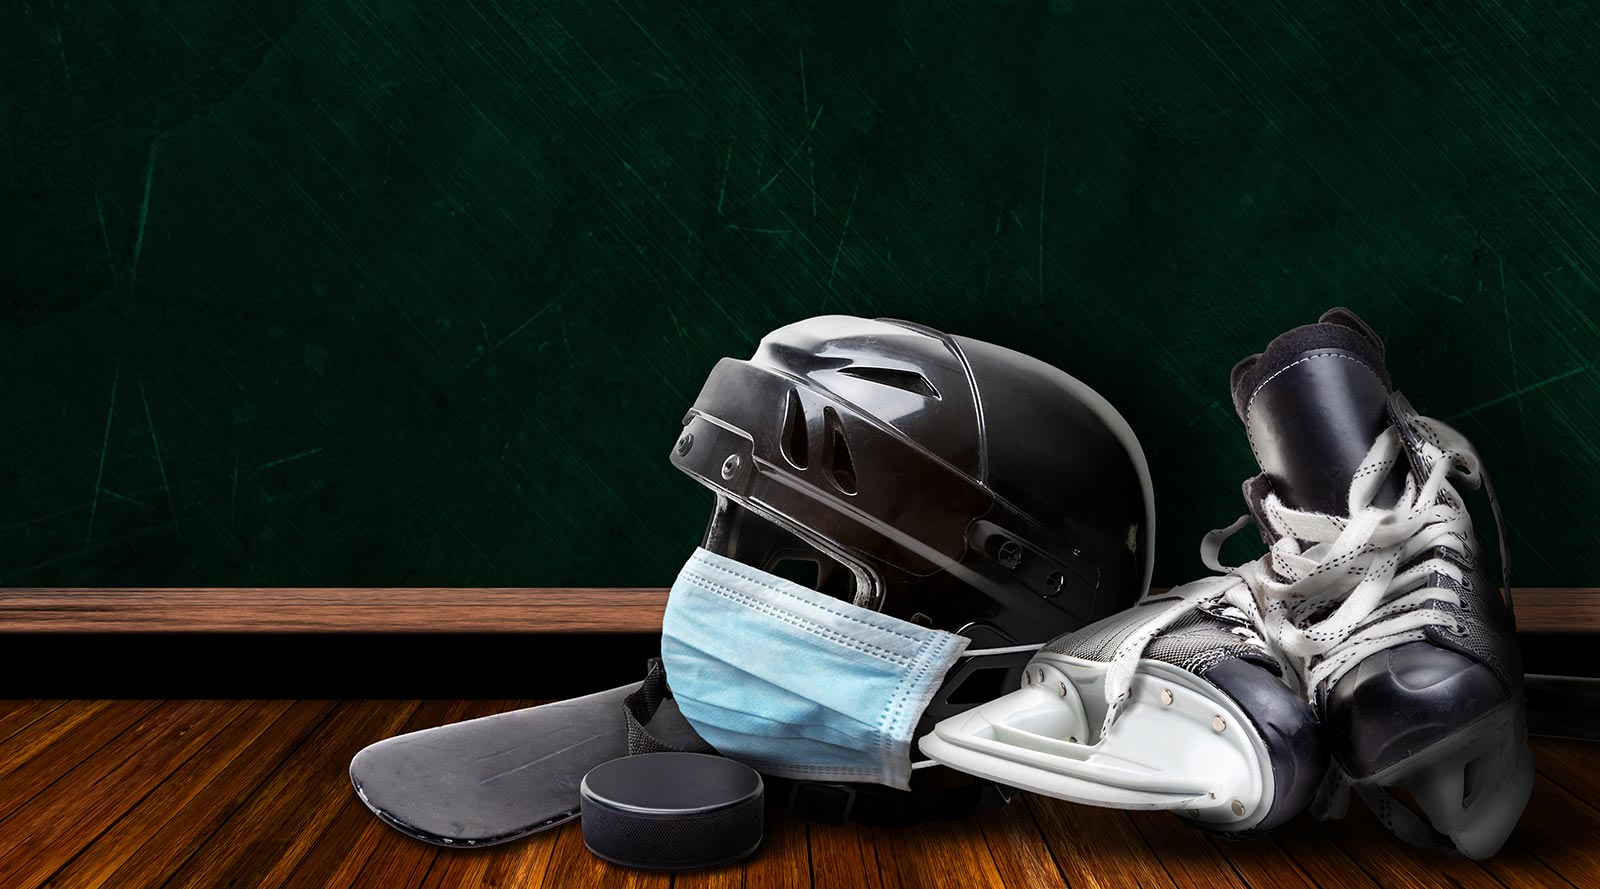 Hockey gear on a floor with a mask over the helmet.